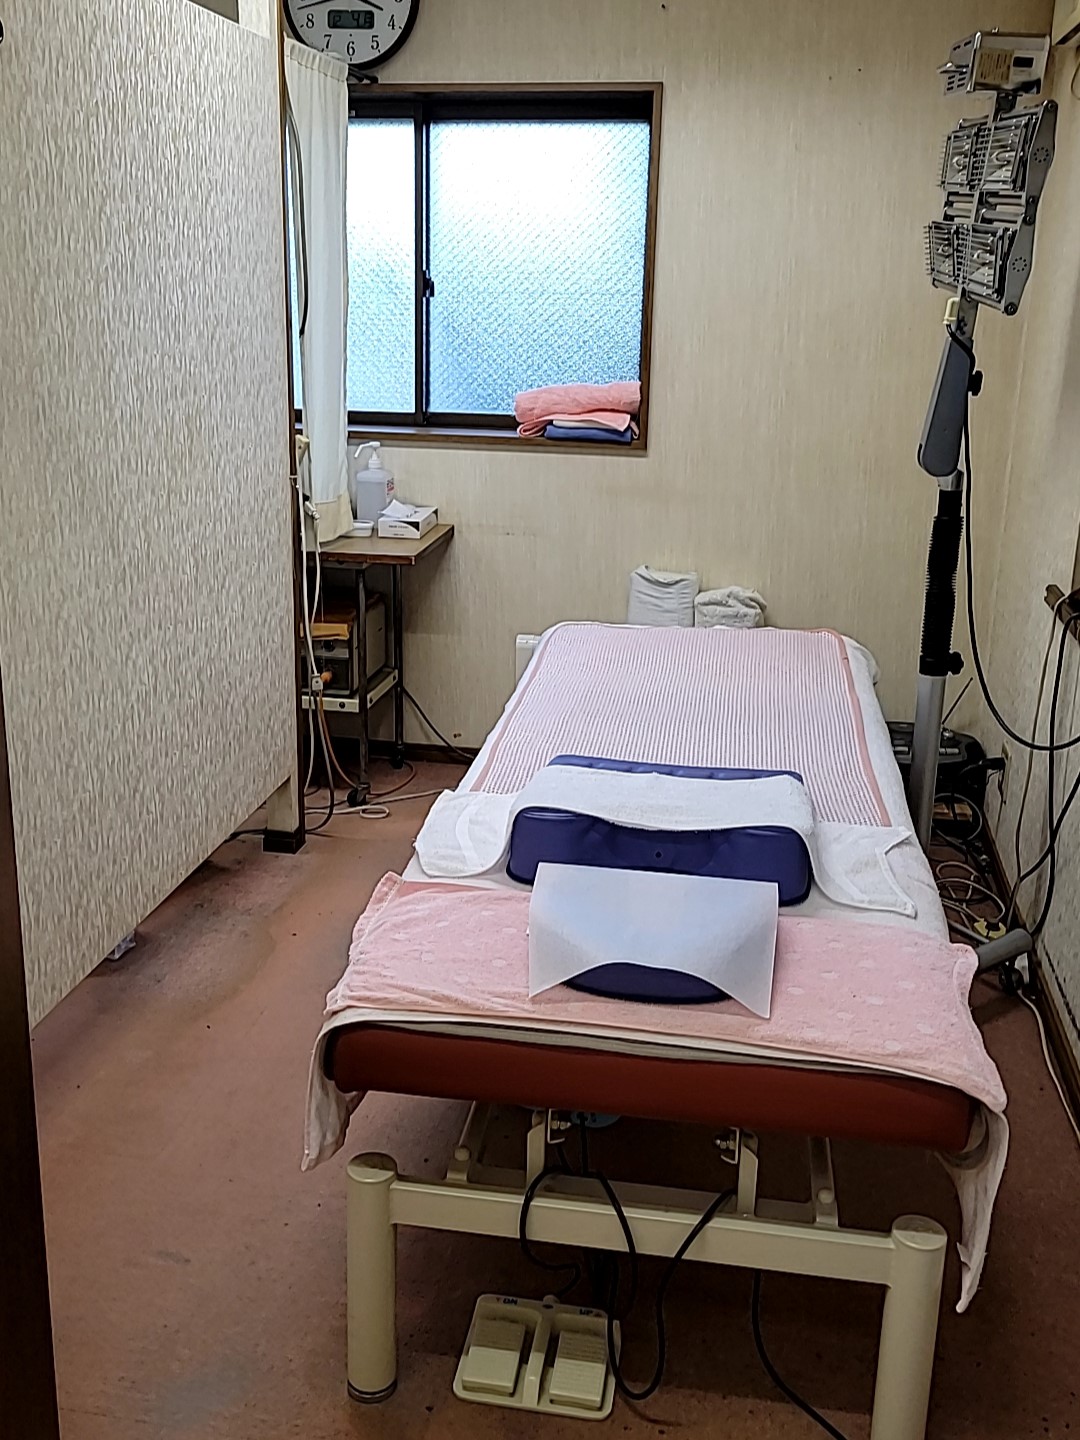 川崎市『ゴスペル鍼療院』の診療室